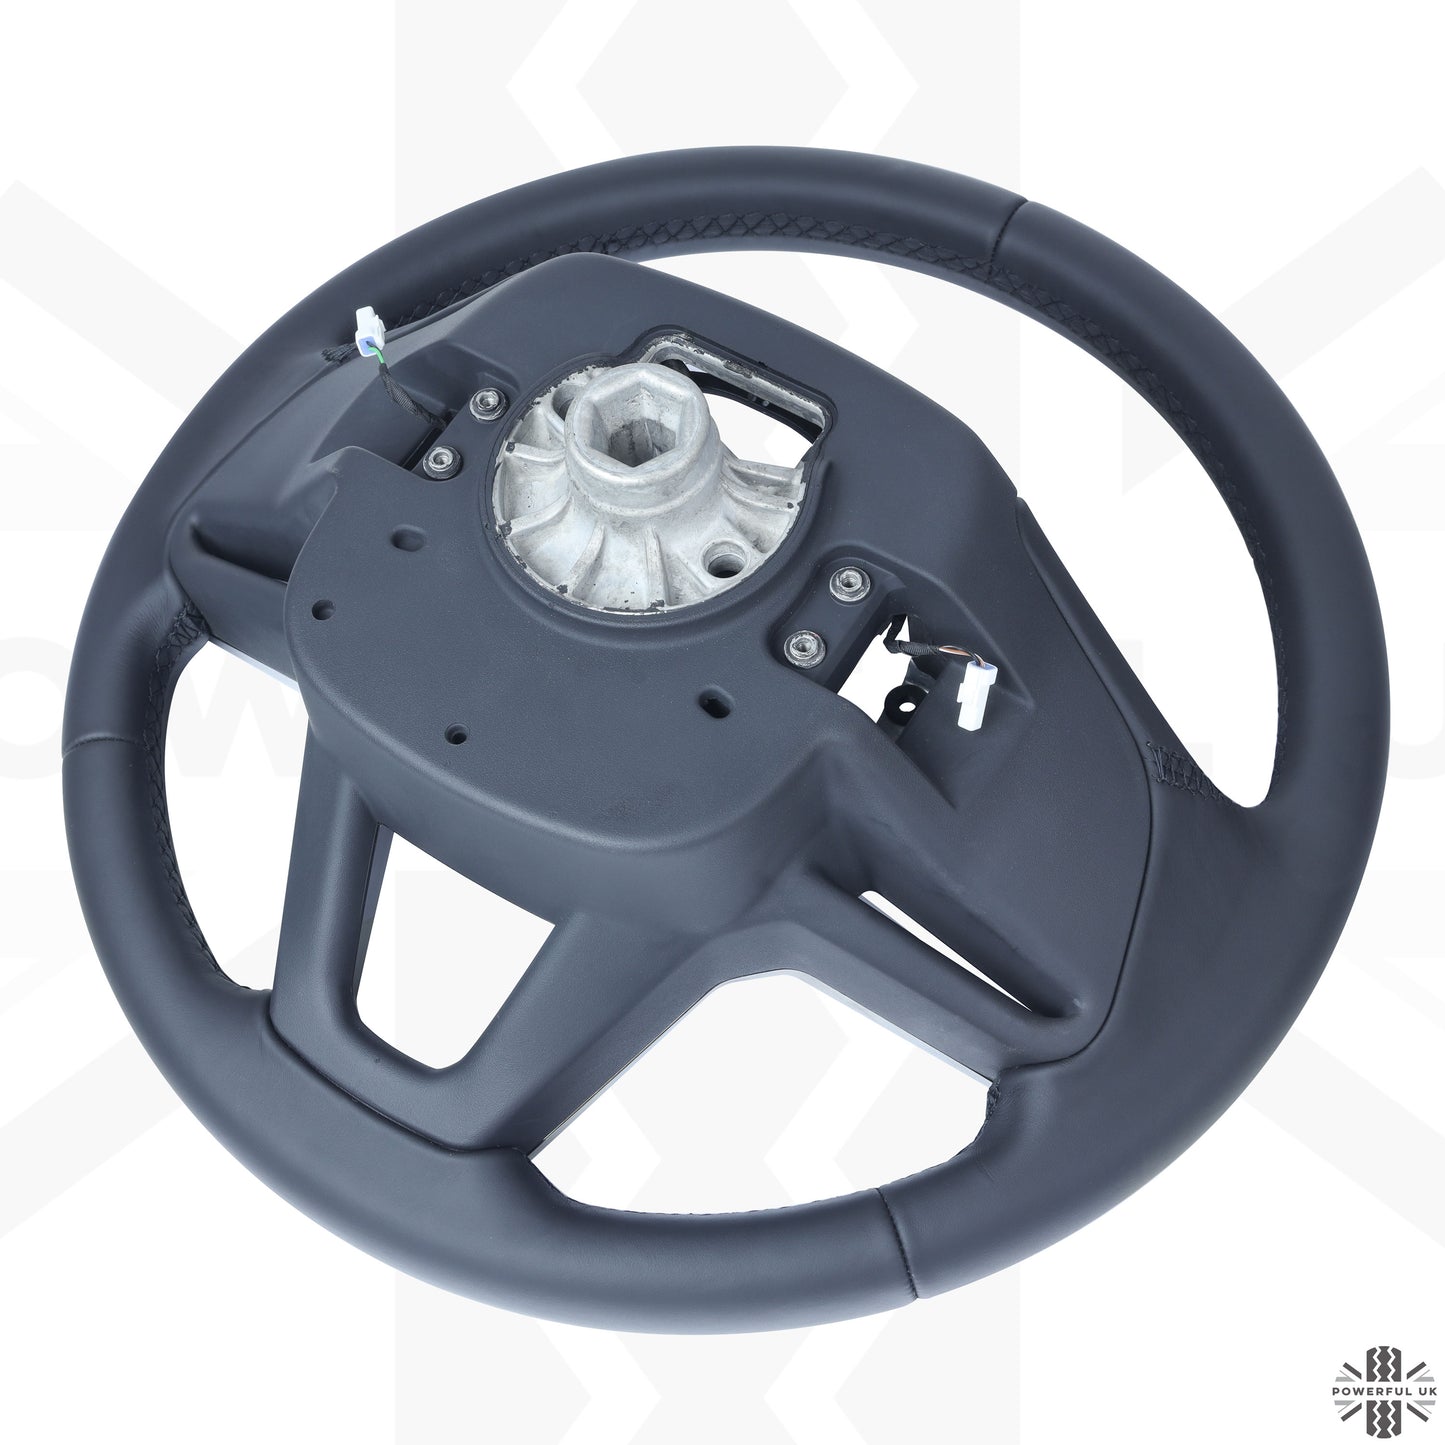 Steering Wheel - Heated - Ebony Leather + Moonlight Bezel for Range Rover Sport L461